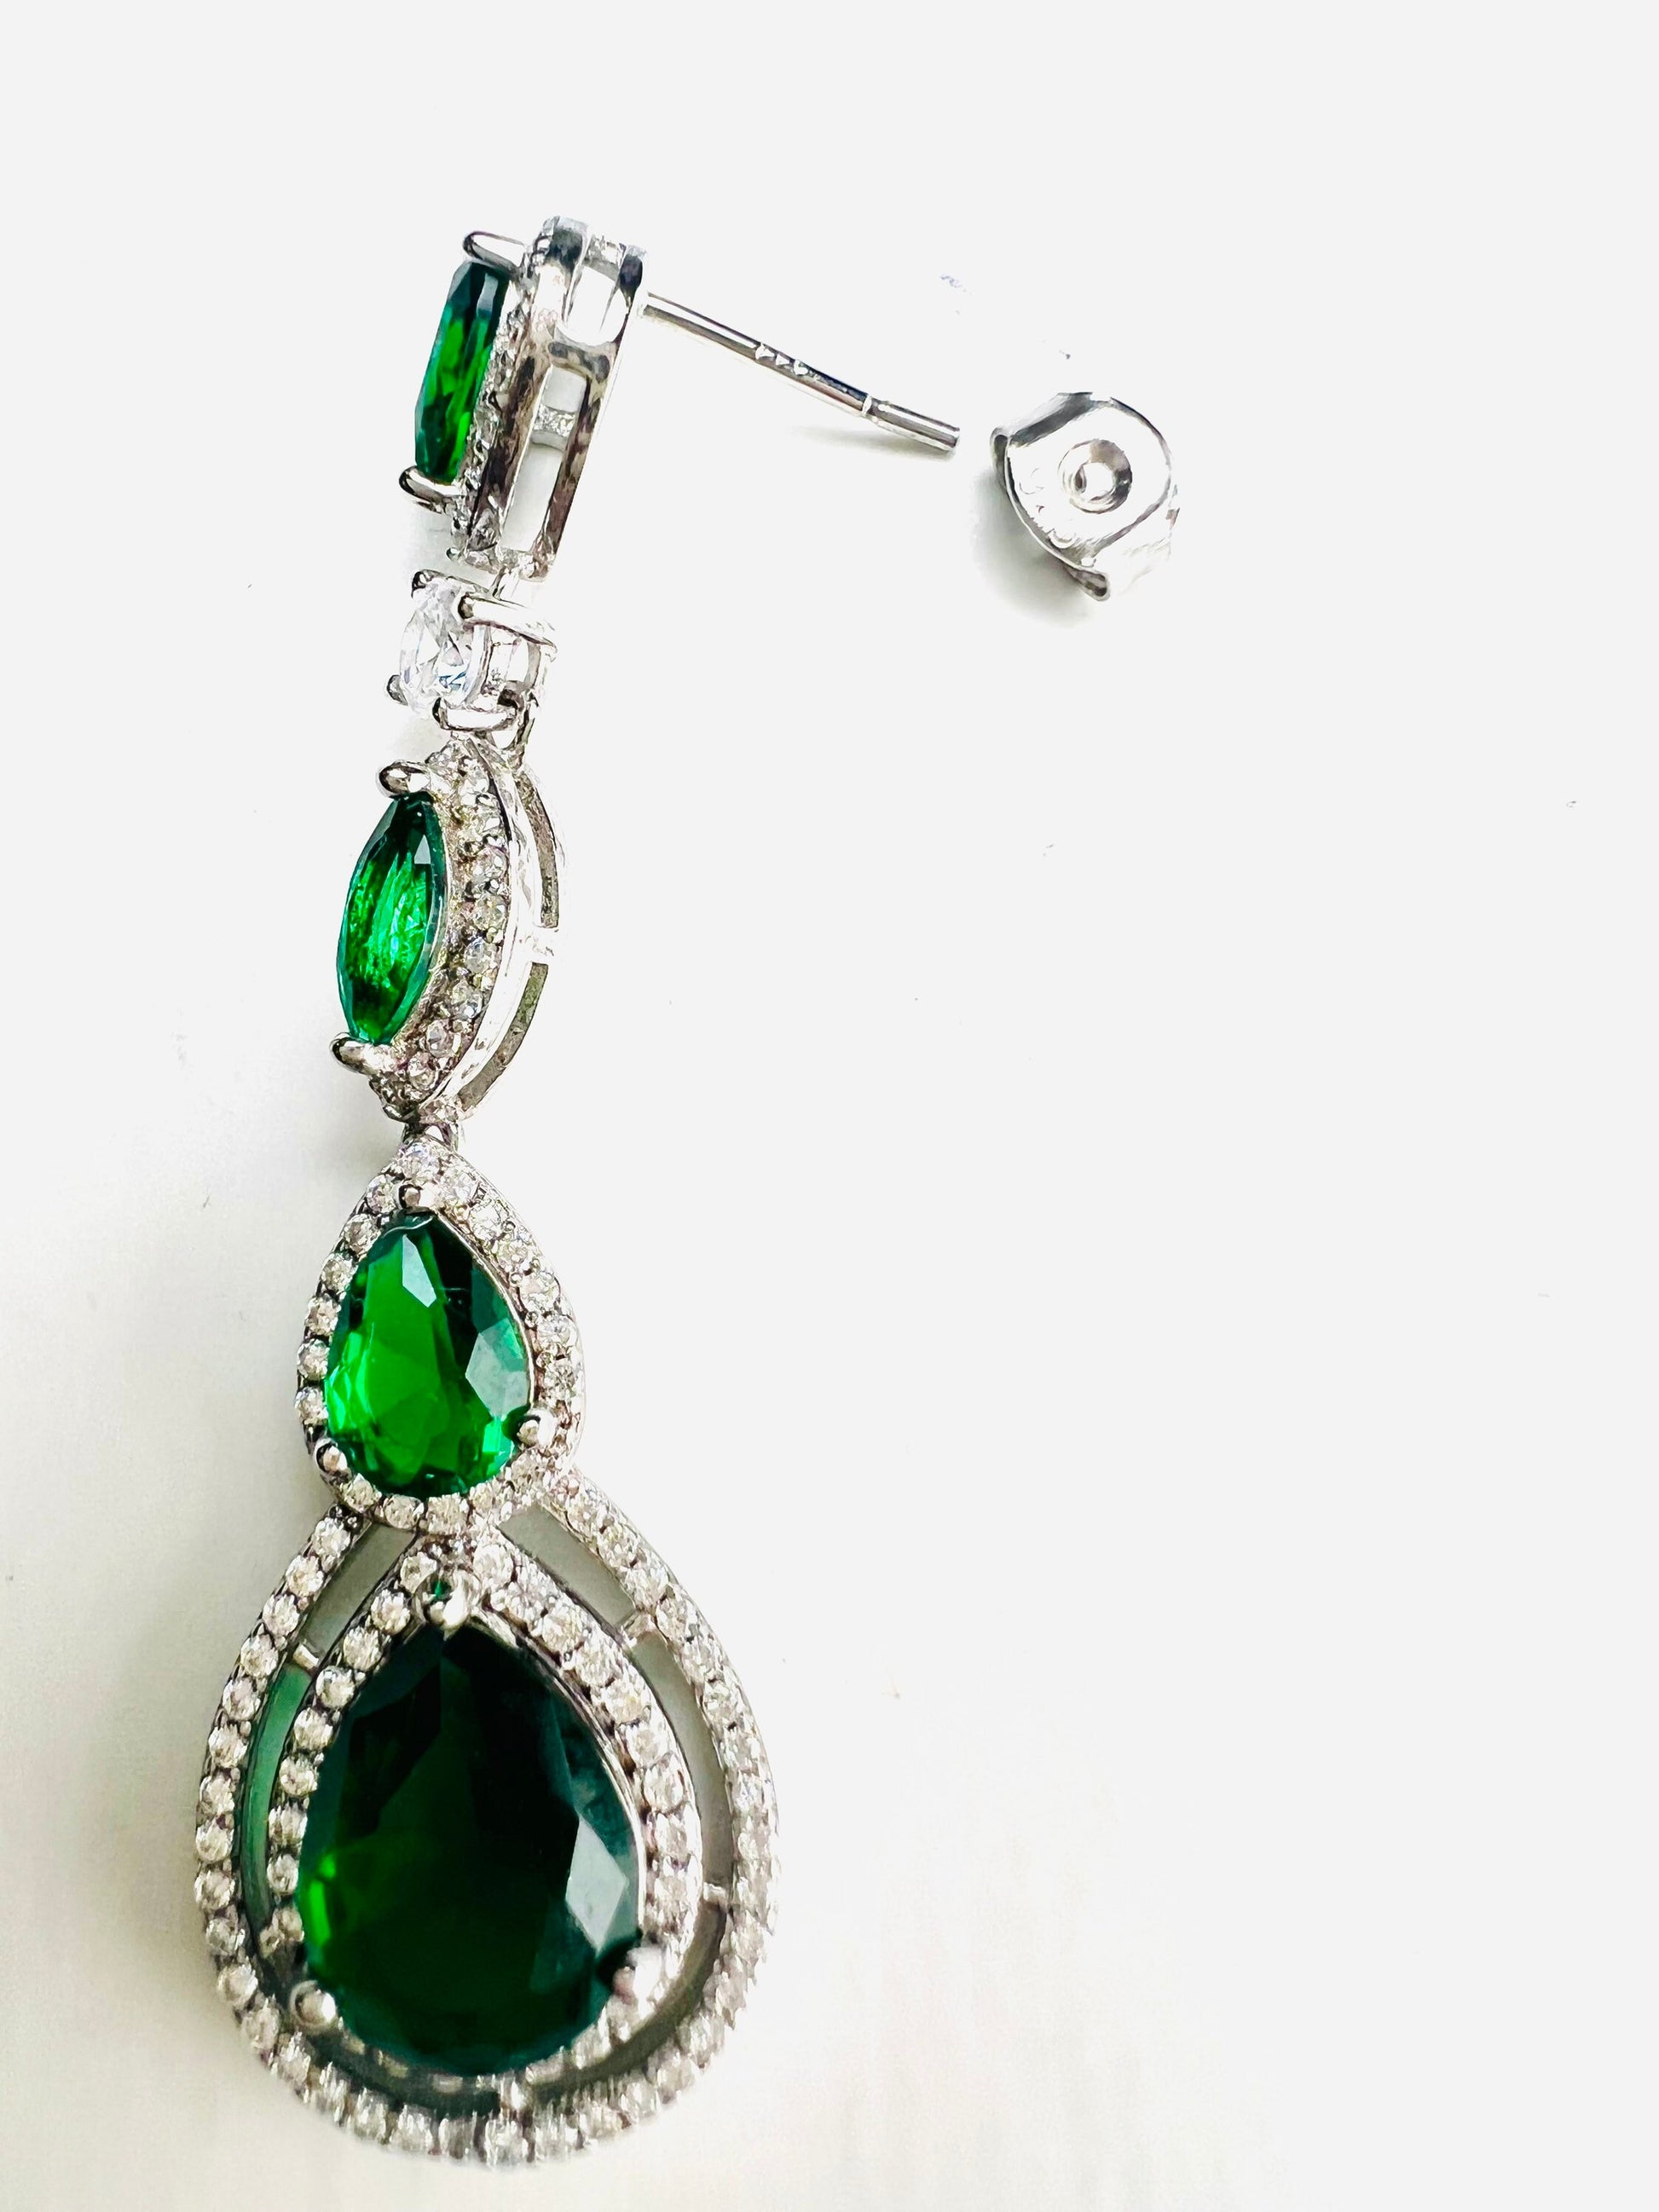 925 Sterling silver Green Emerald Long Drop CZ Diamond Pave earrings.Evening Wear,party Boho, Bridal, Fancy Earrings,925 stamped